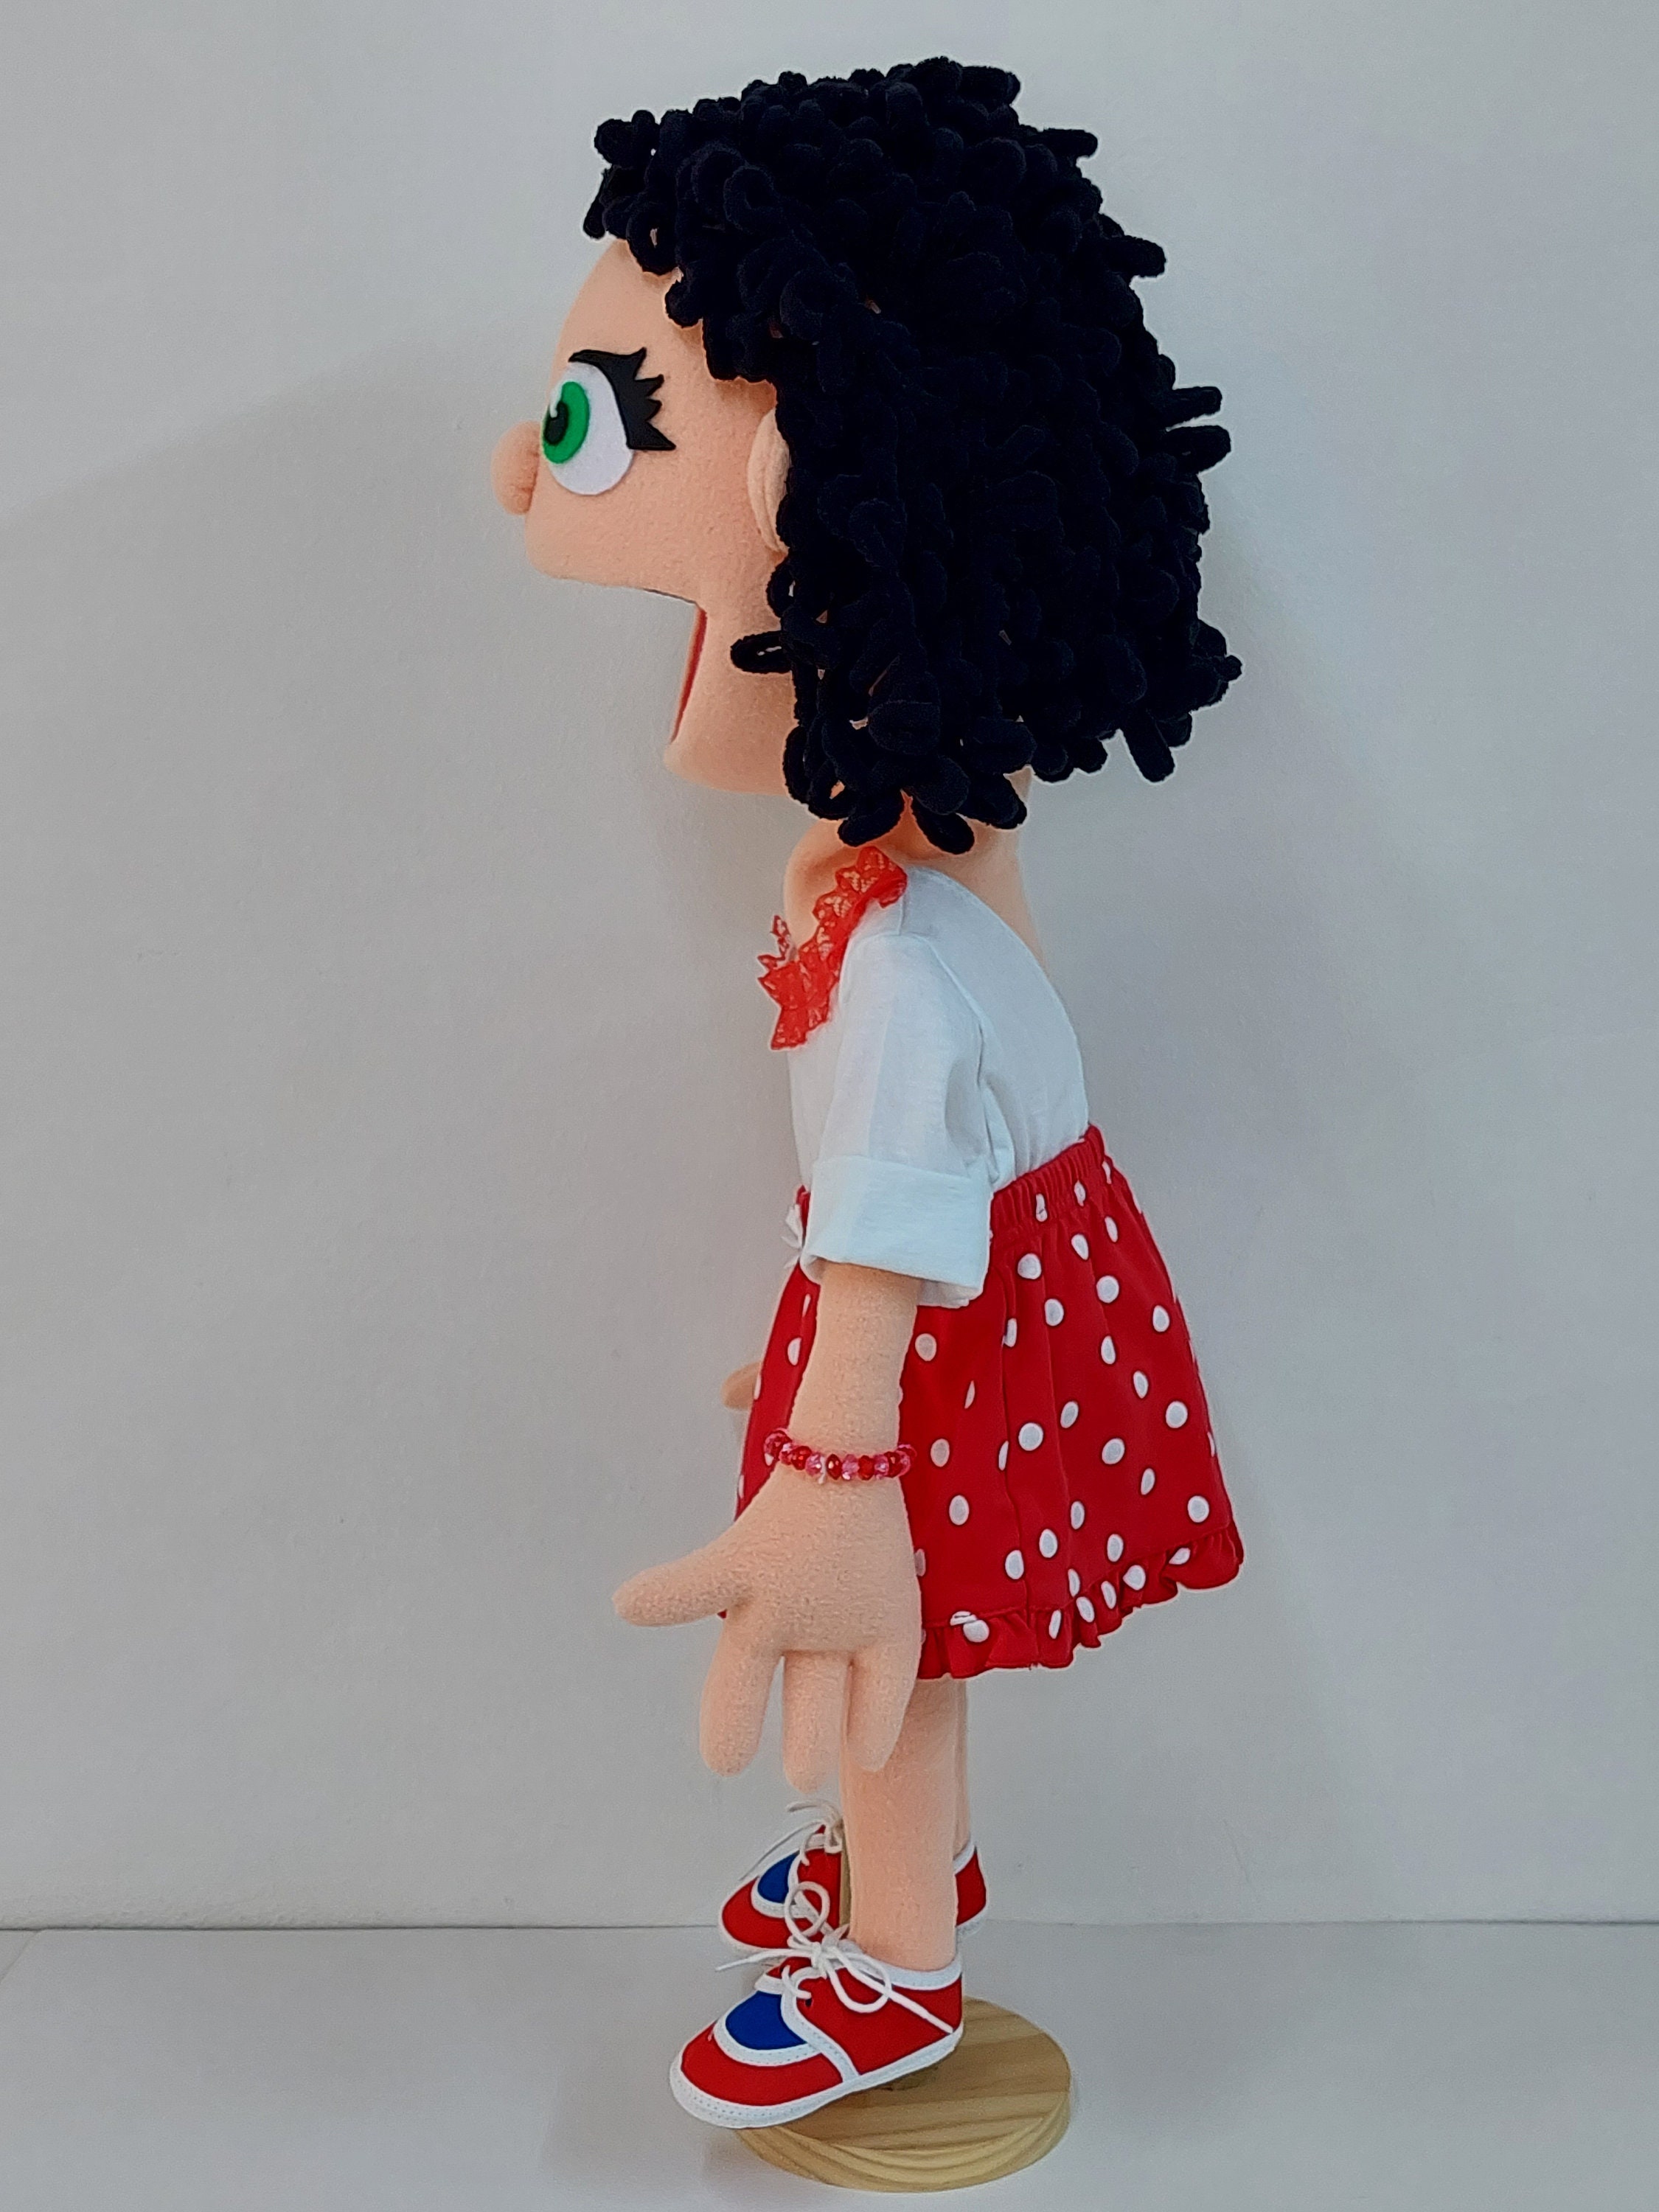 Marionnette ventriloque fille douce, marionnette drôle, marionnette à tige  de style professionnel -  Canada